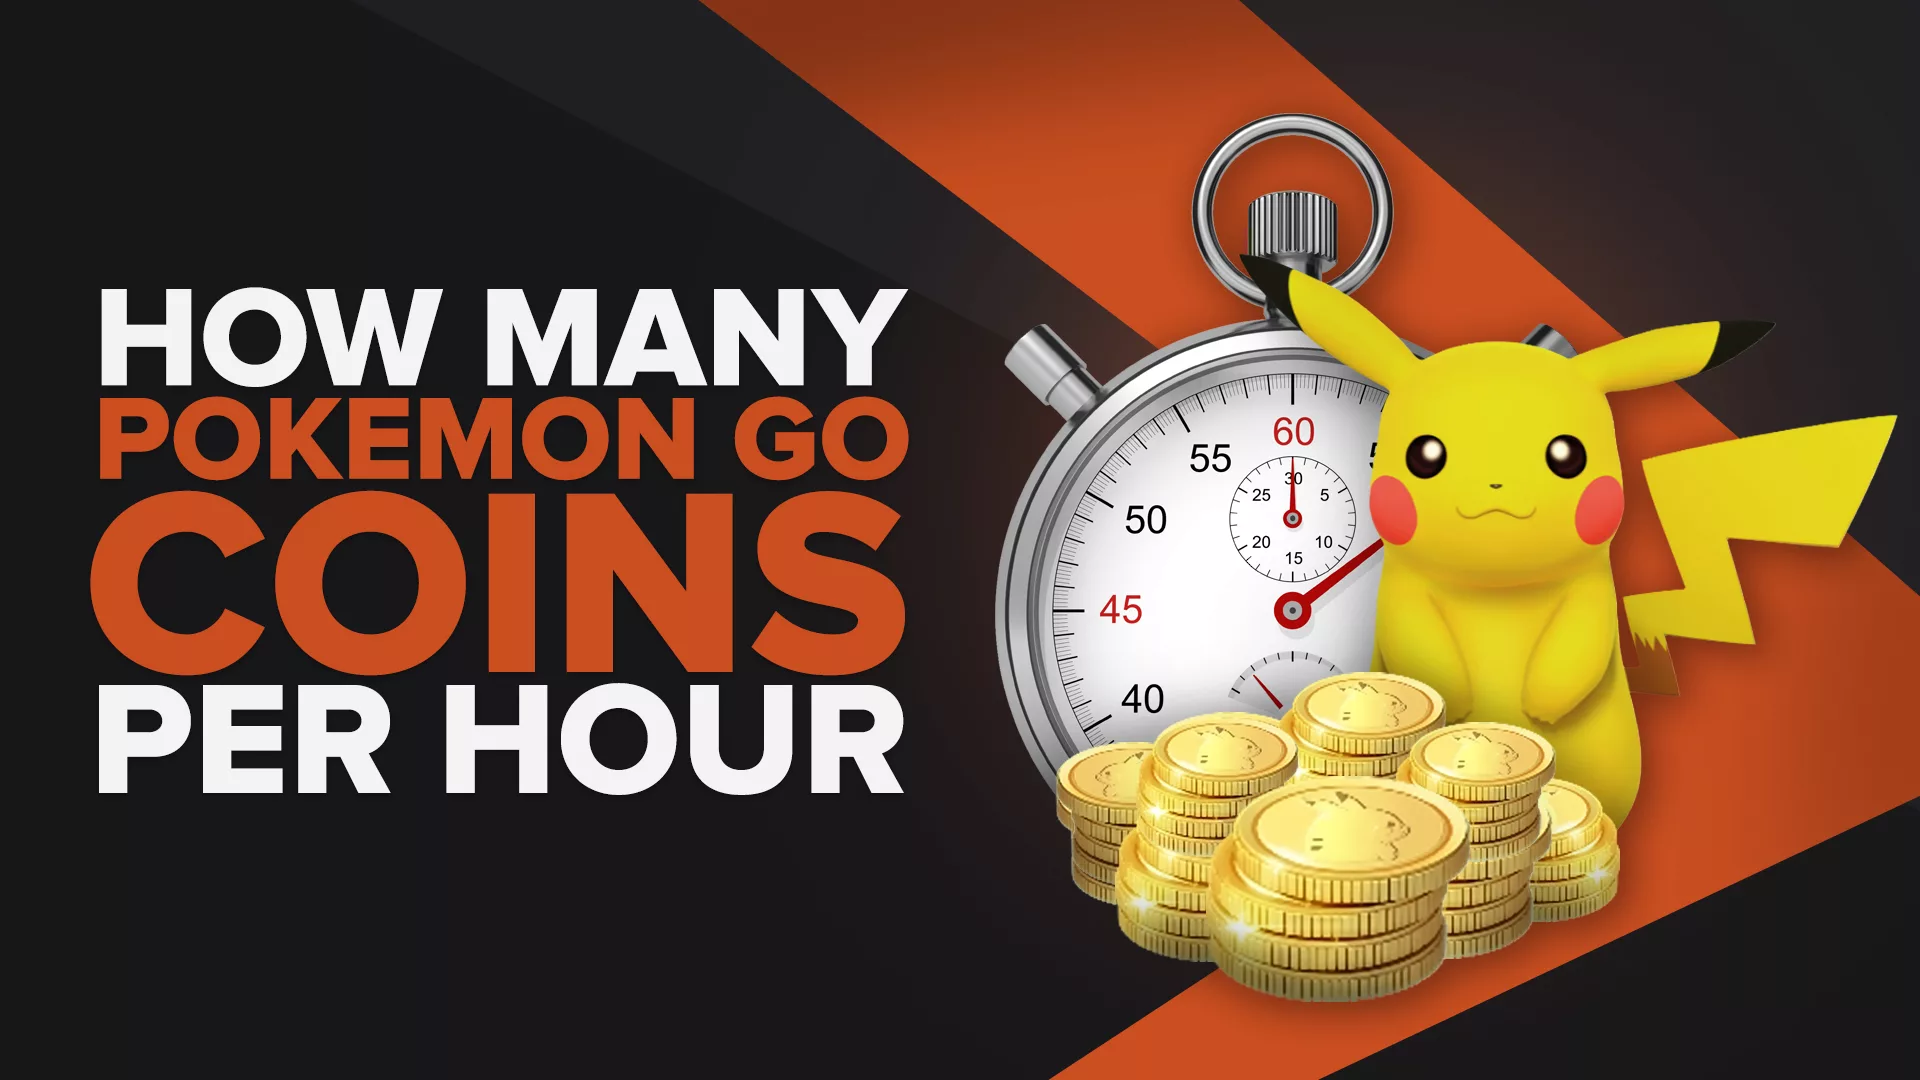 How Many Pokémon GO Coins Per Hour Can You Get?